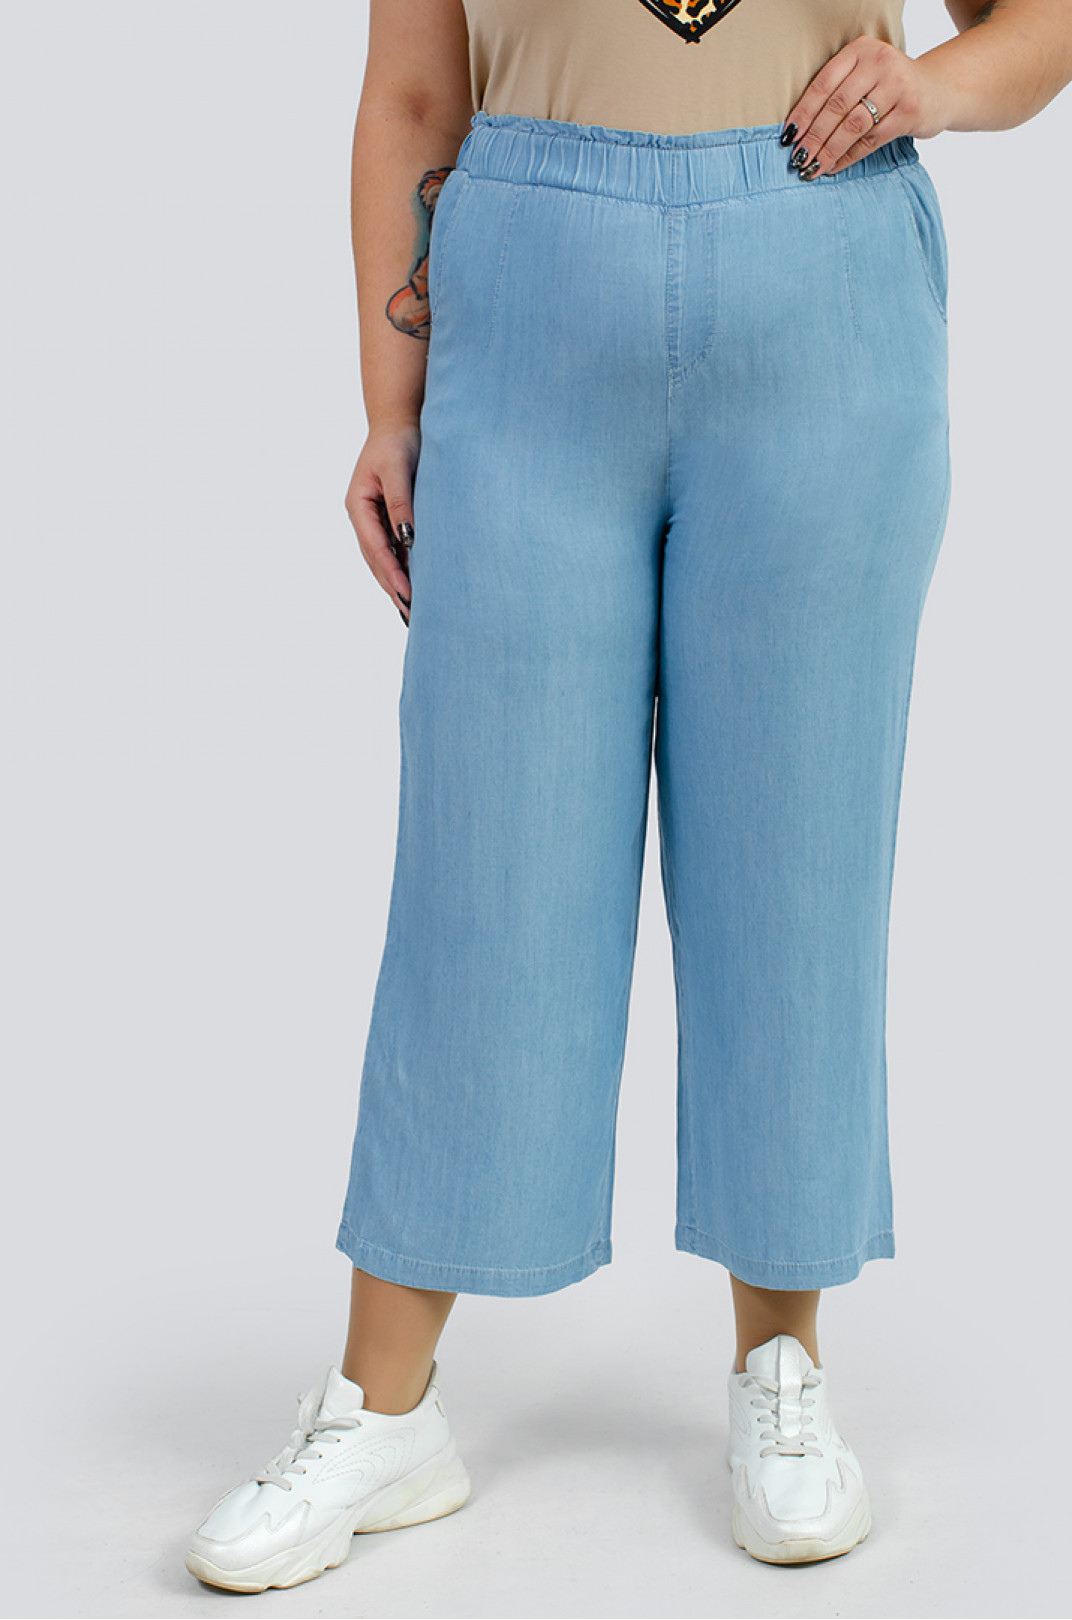 Светло-голубые джинсы кюлоты больших размеров